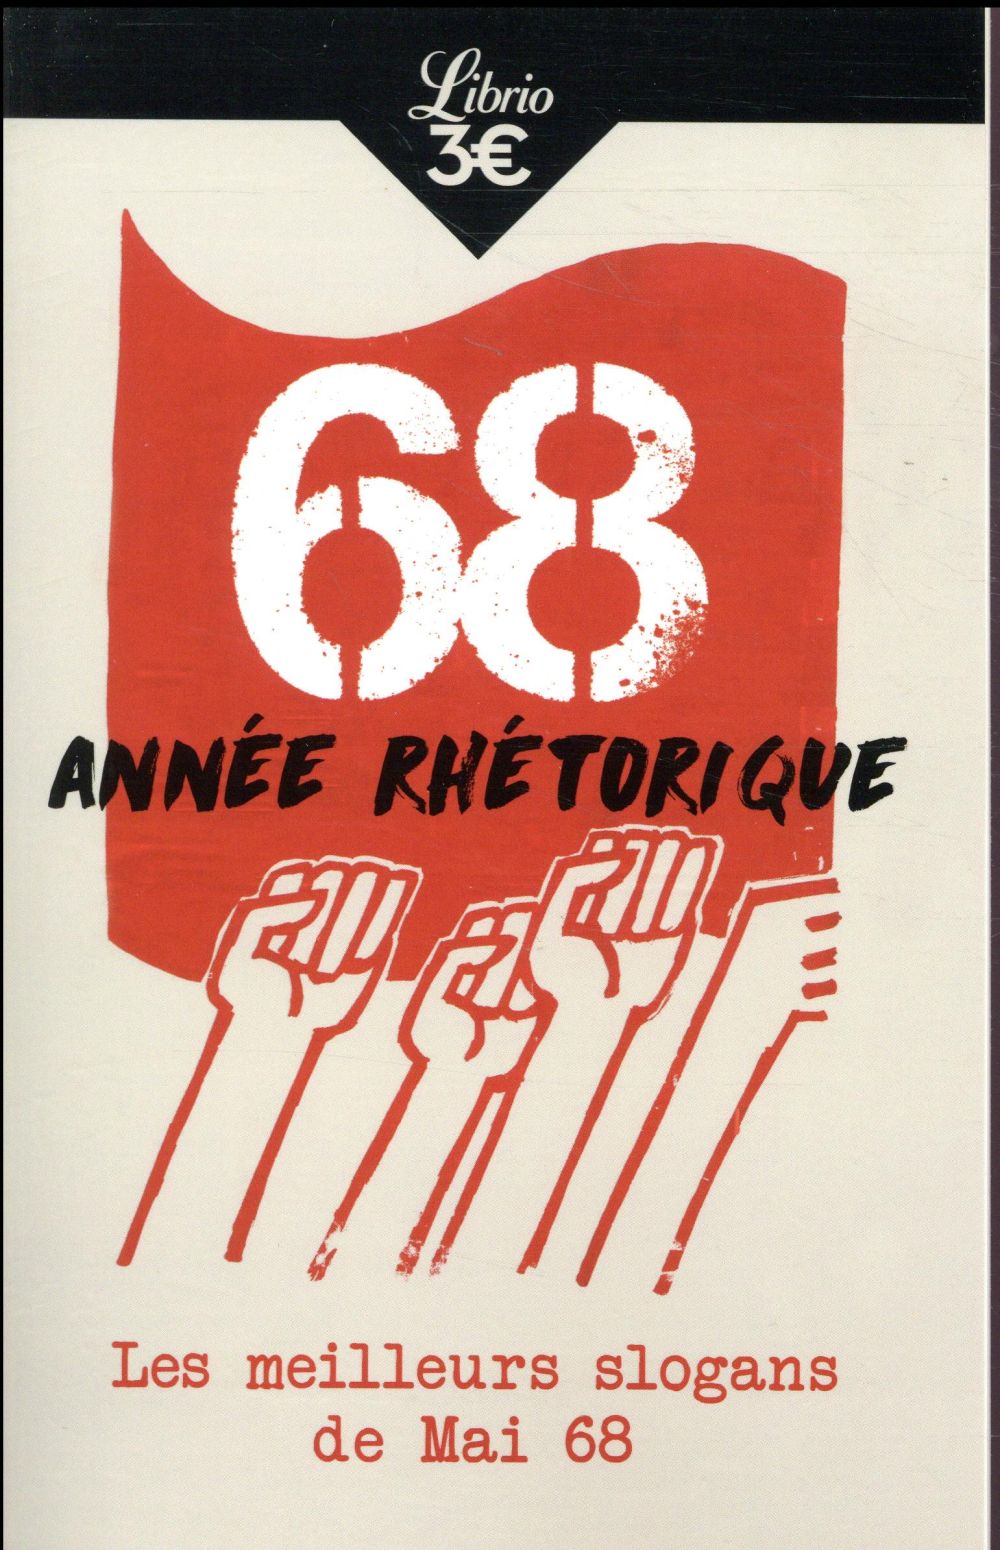 68, ANNEE RHETORIQUE - LES MEILLEURS SLOGANS DE MAI 68